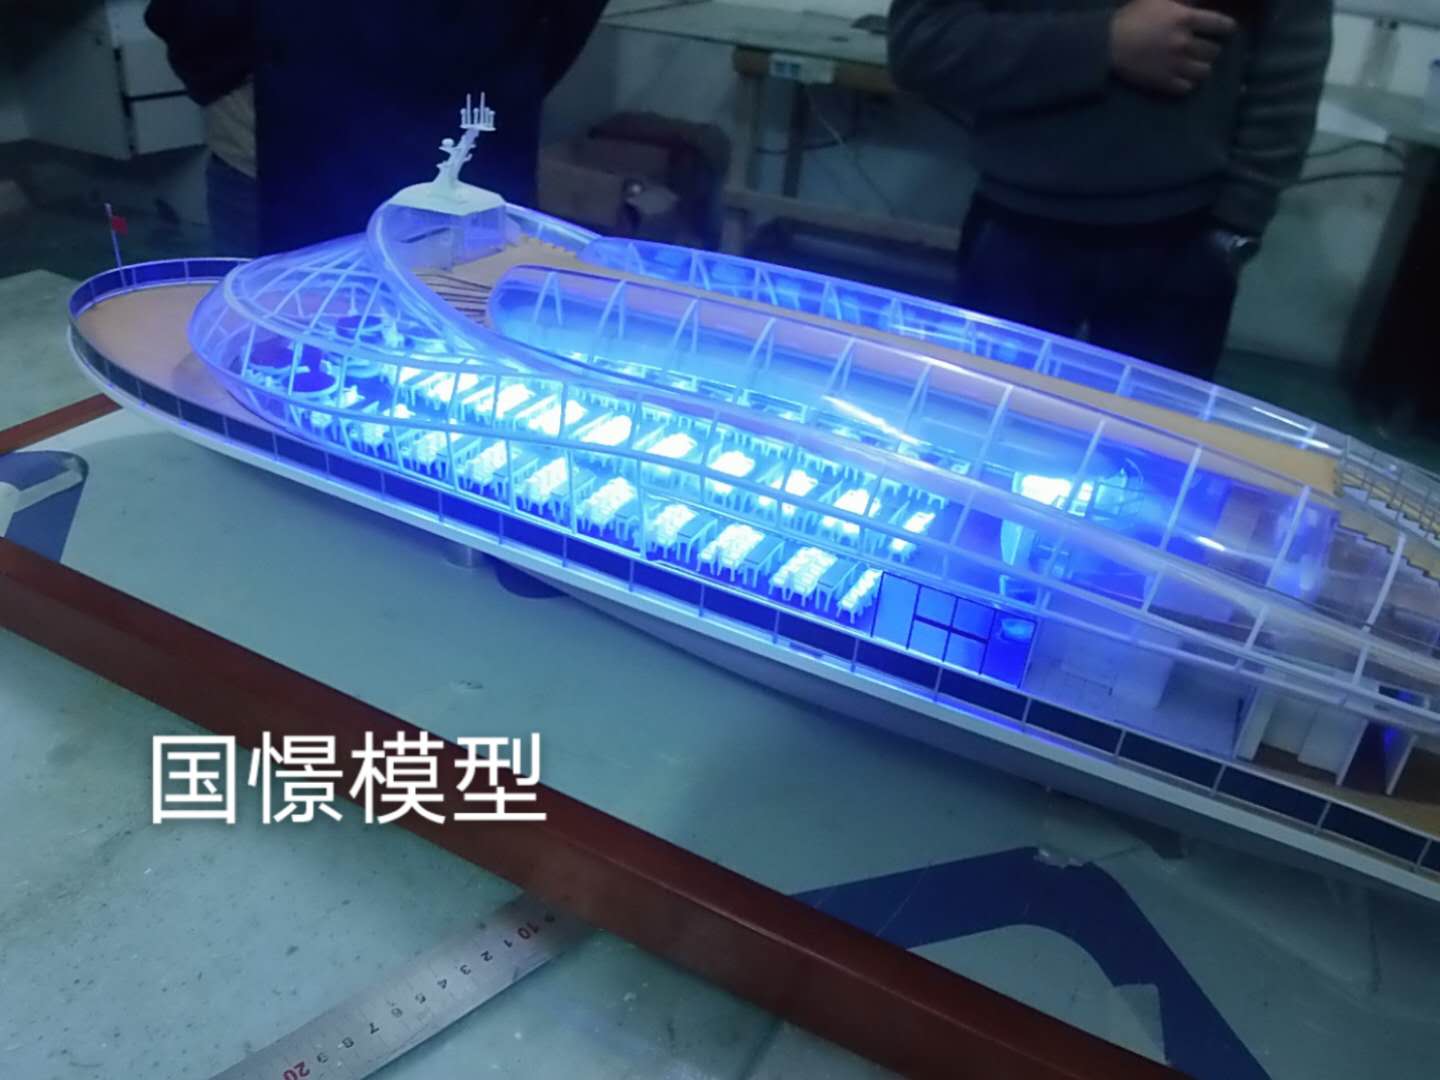 吴忠船舶模型